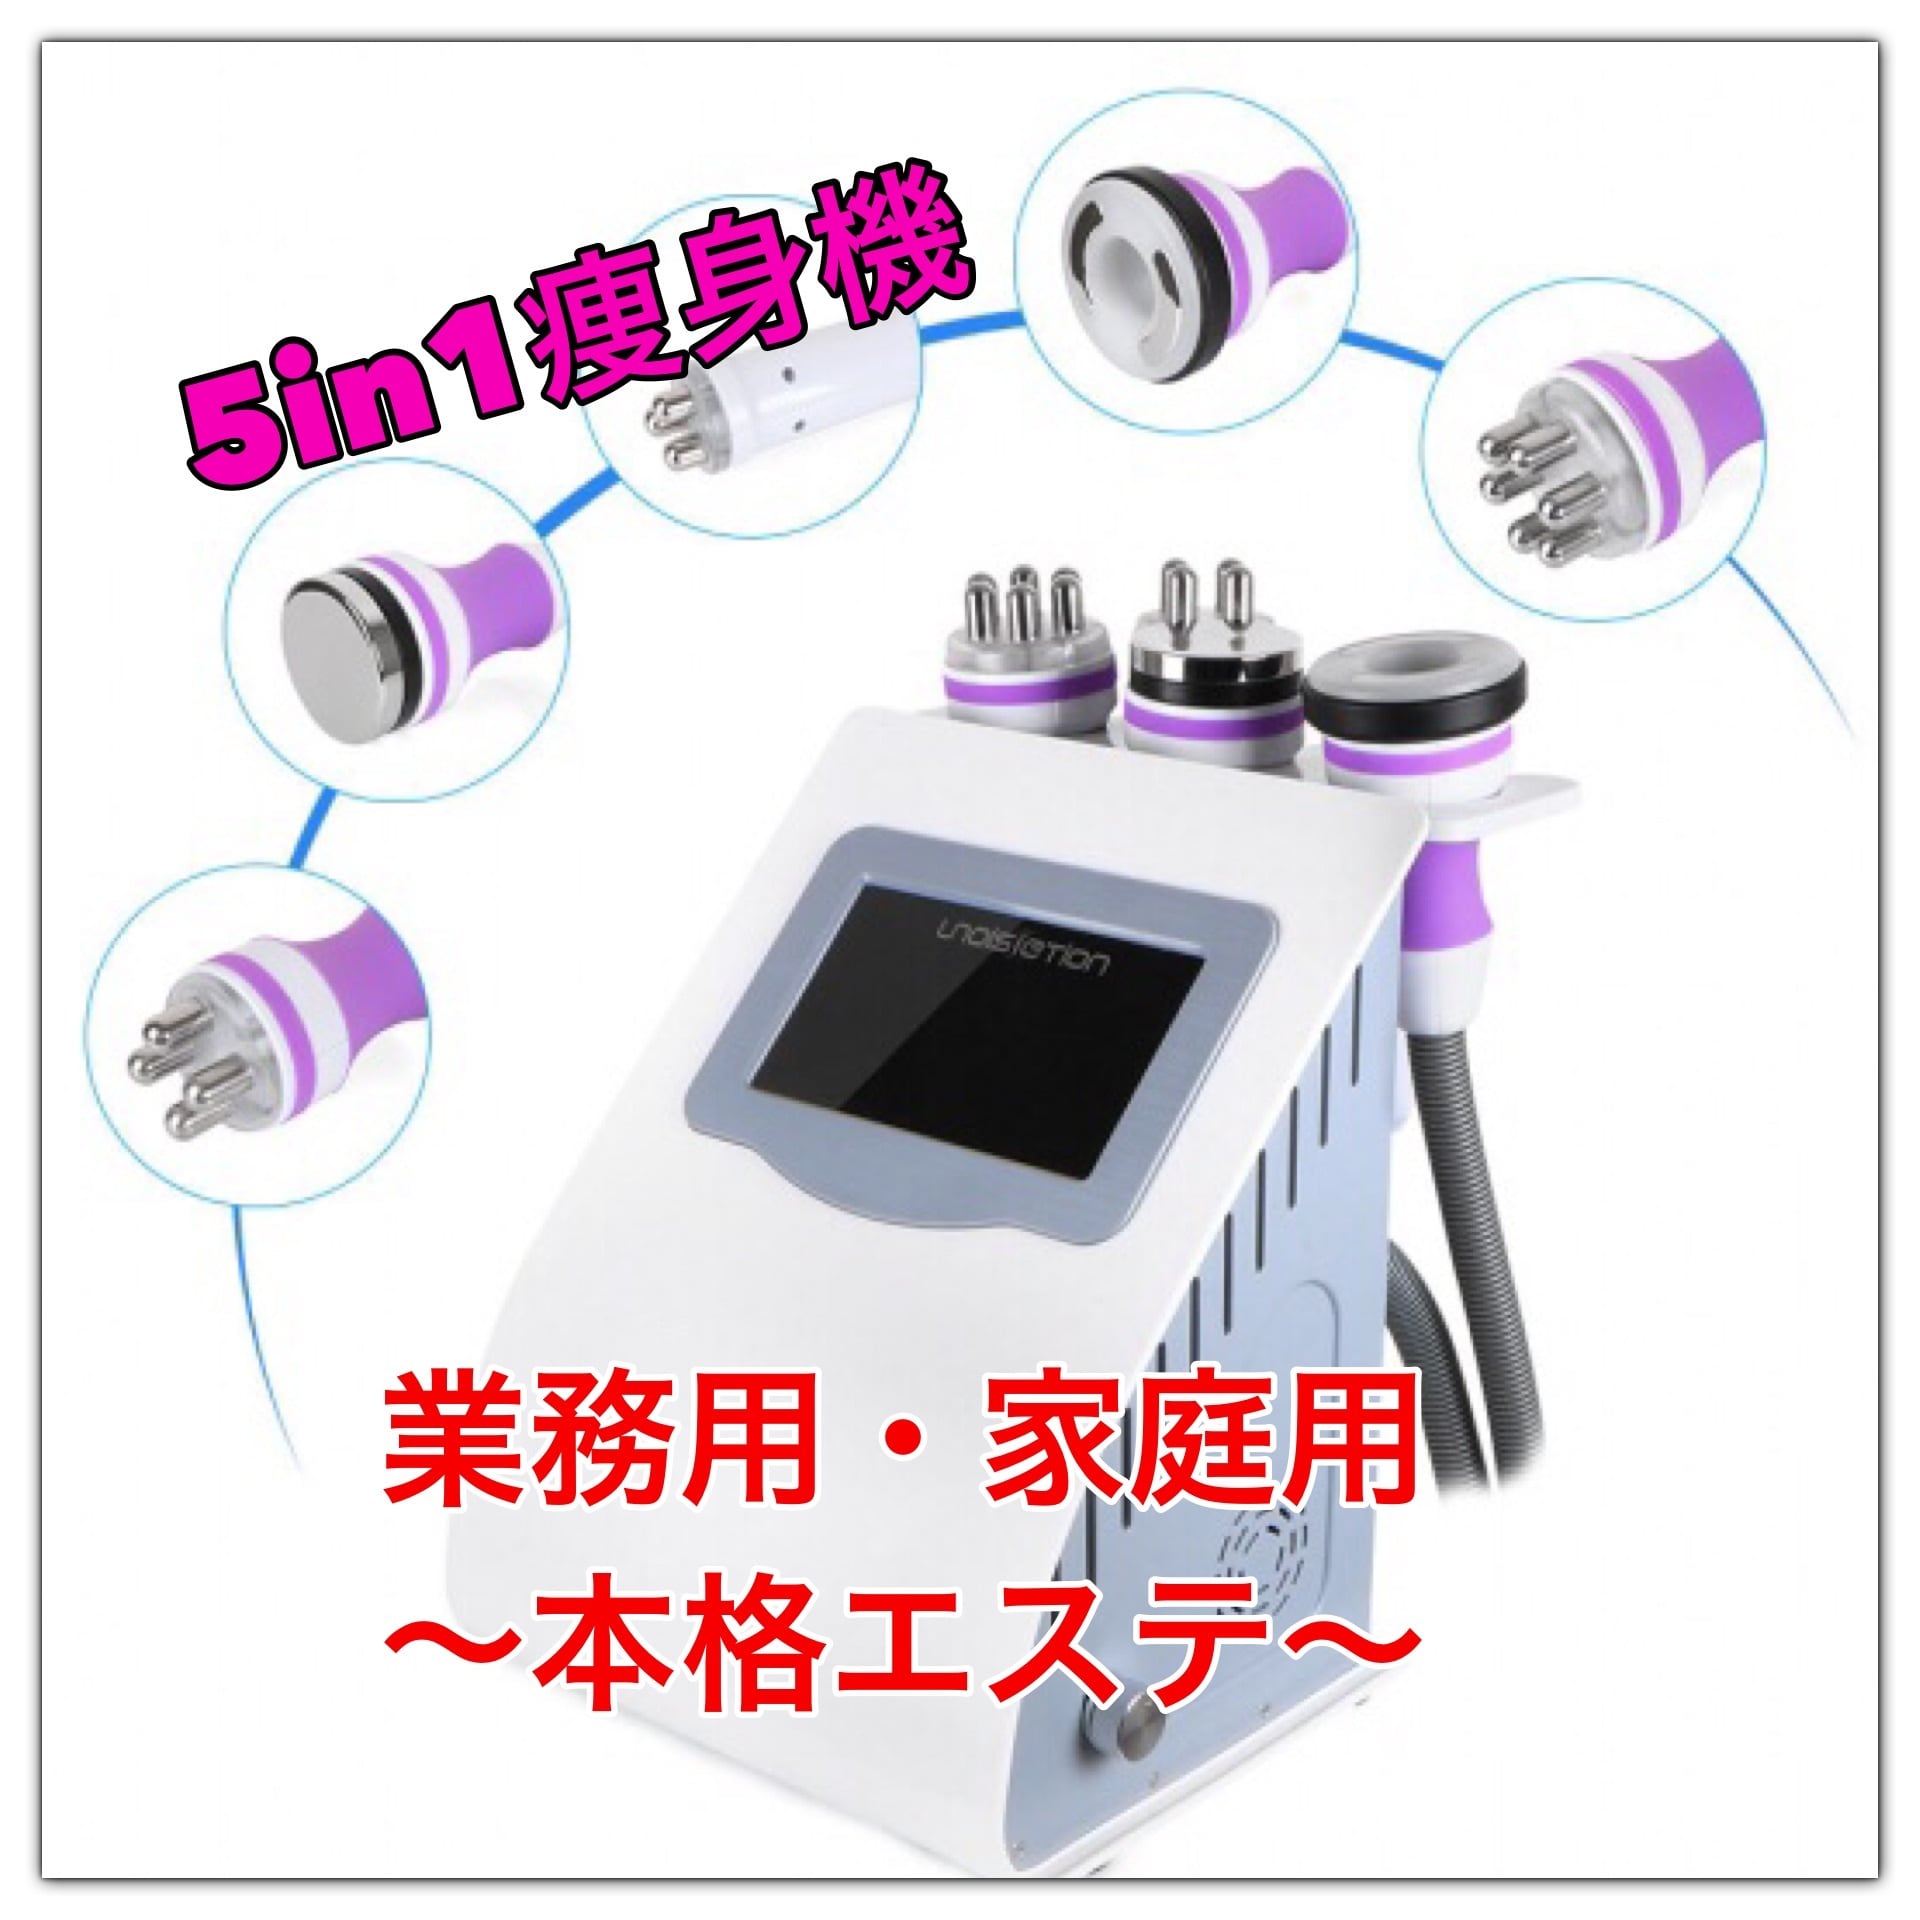 新品☆業務/自宅用☆ 5in1 40kHzキャビテーション 3Dラジオ波 | nexia